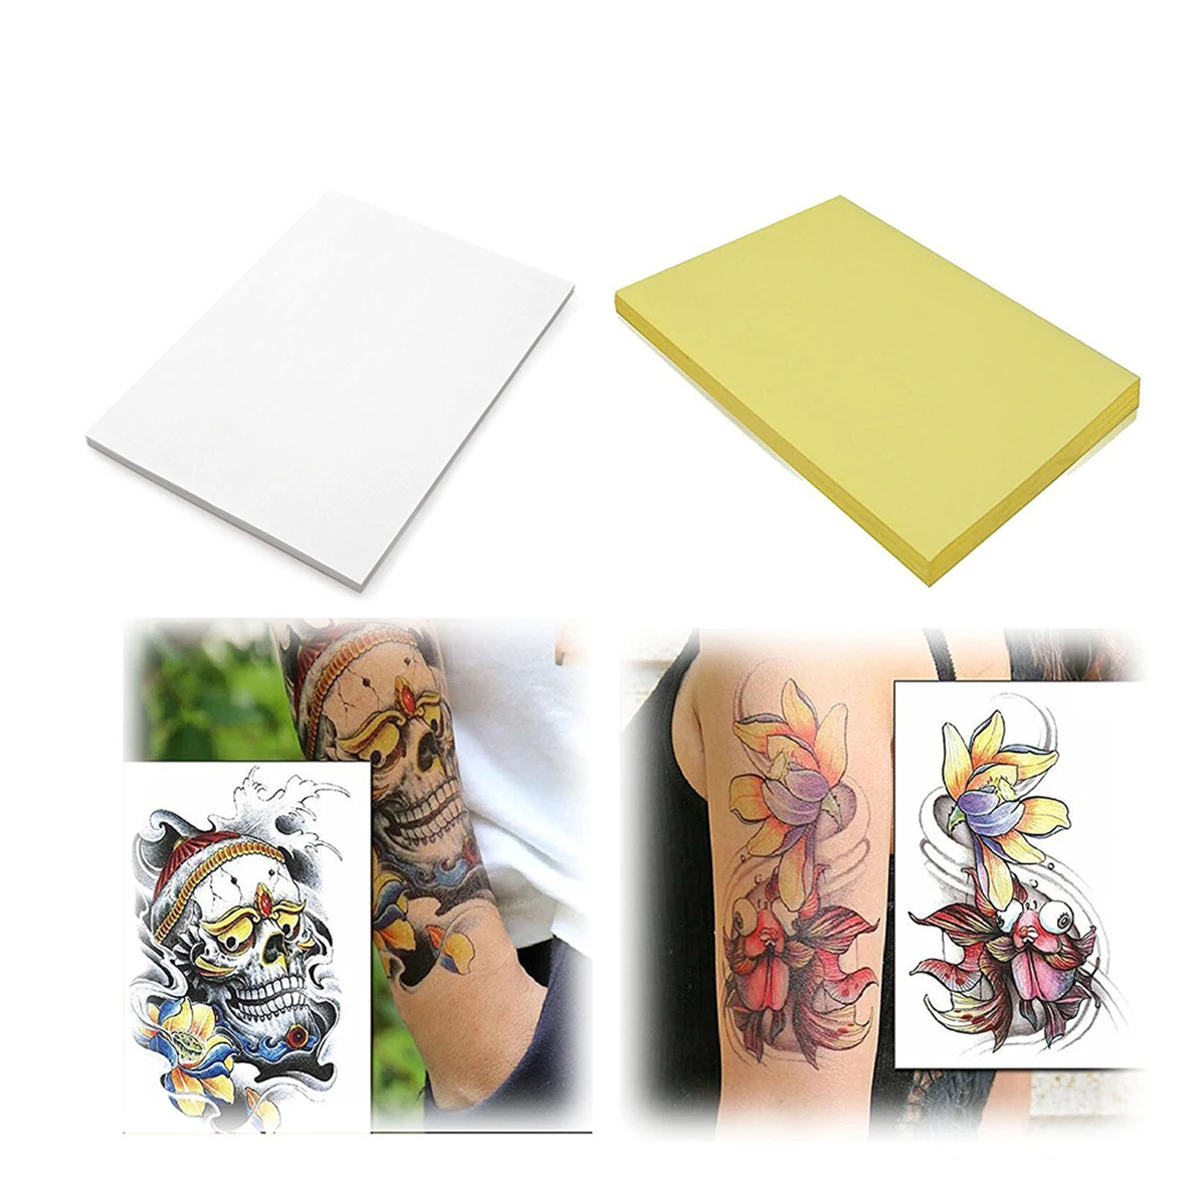 

35 штук переводной татуировки Бумага листы из 4 слоев DIY отслеживание татуировок Бумага для татуировки (A4 размер)